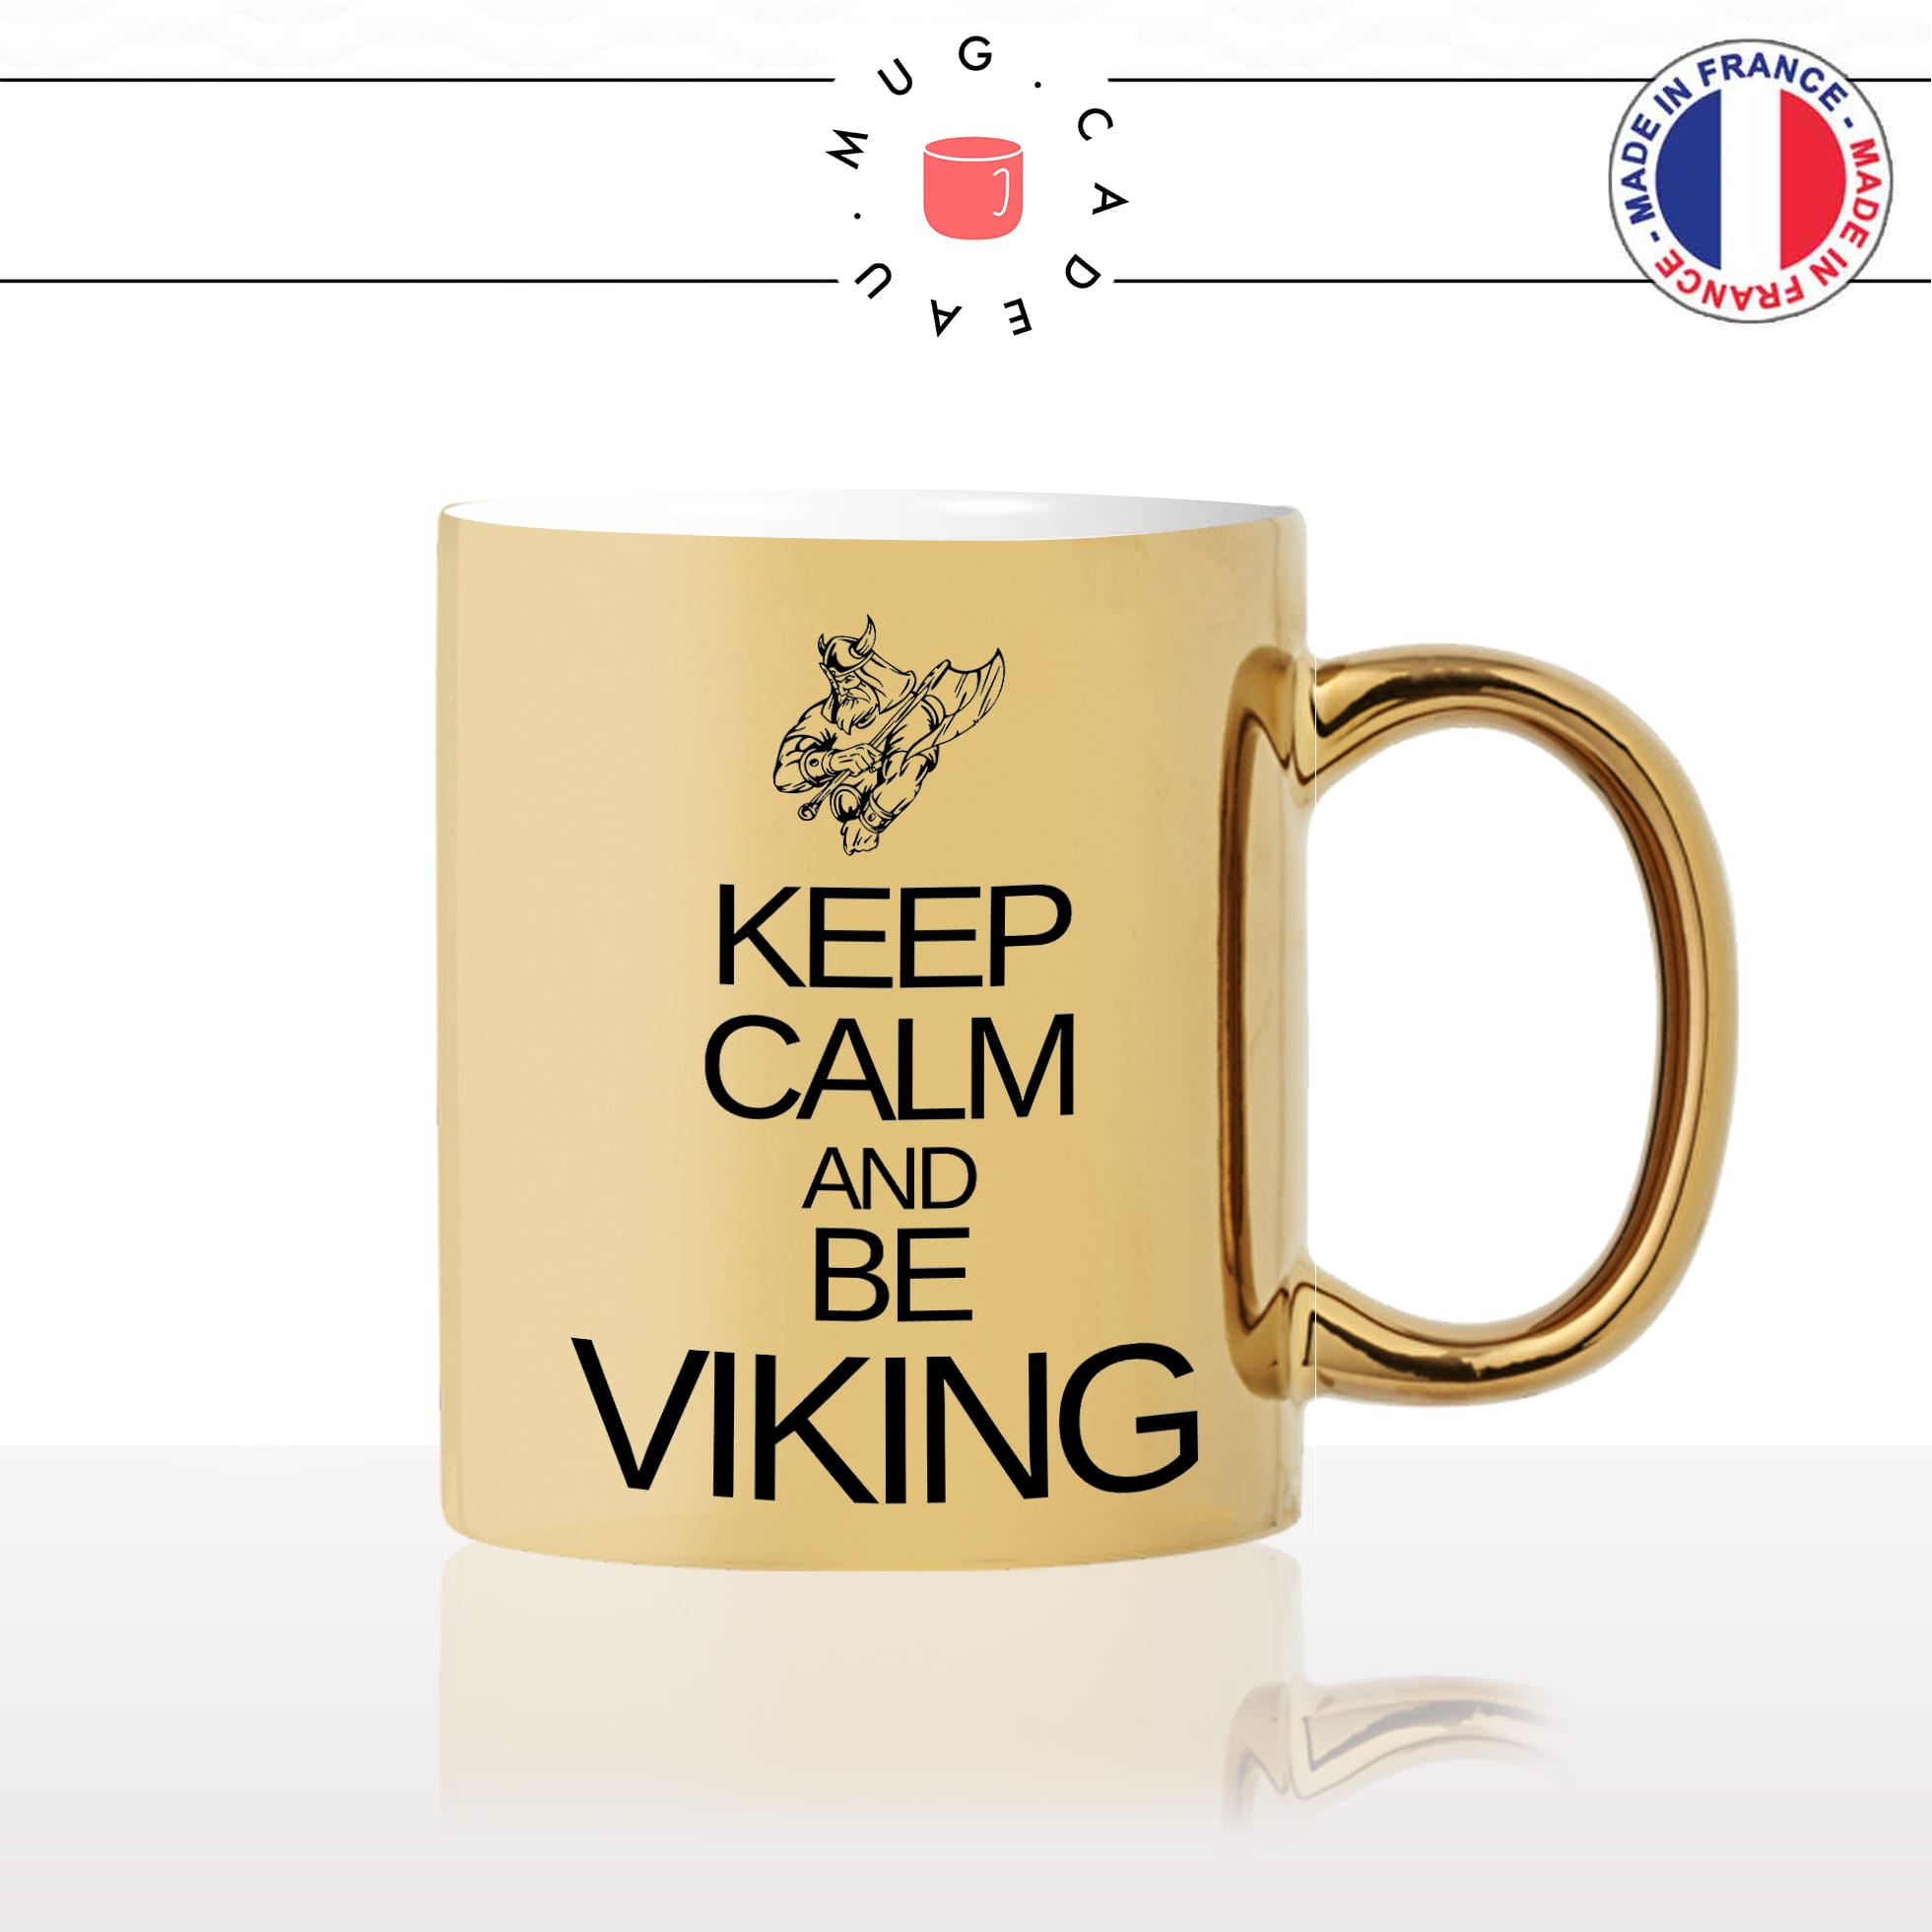 mug-tasse-gold-or-doré-keep-calm-and-be-viking-sois-normandie-normand-francais-série-france-humour-idée-cadeau-fun-café-thé-personnalisé2-min